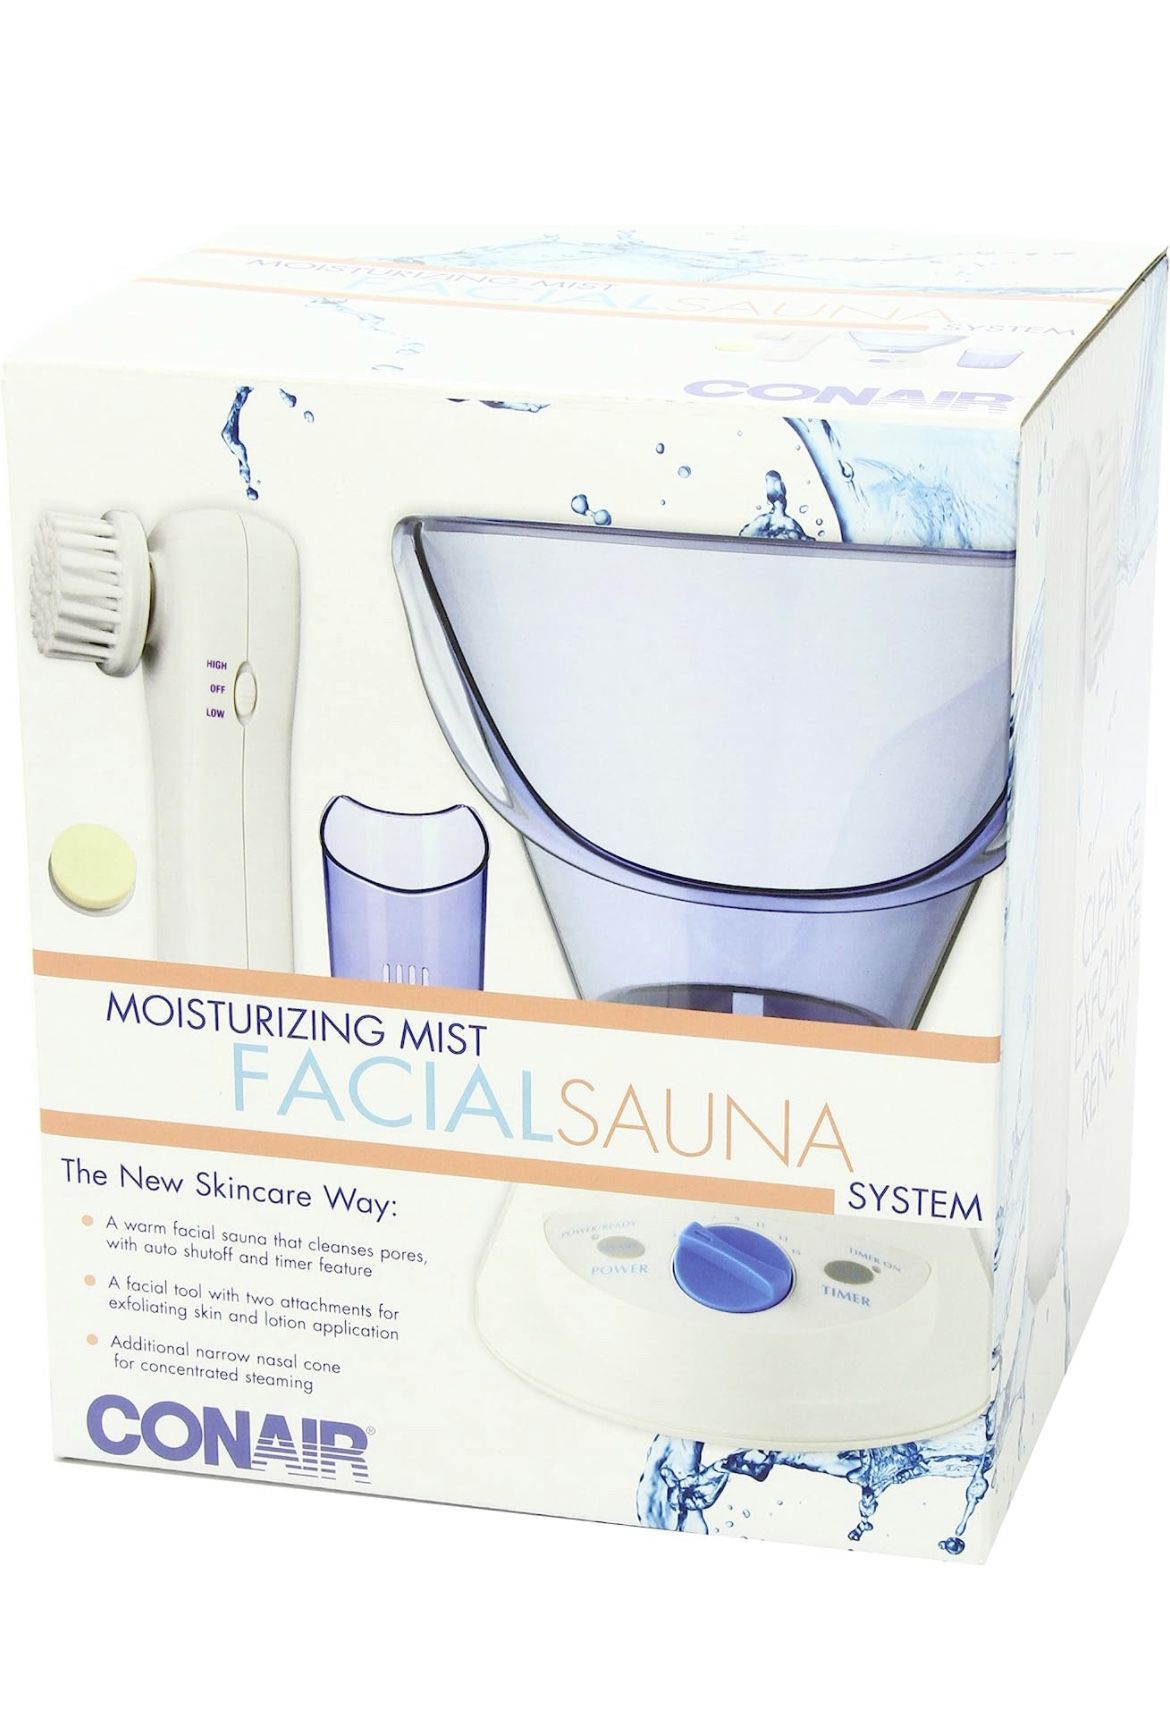 Conair Facial Sauna System